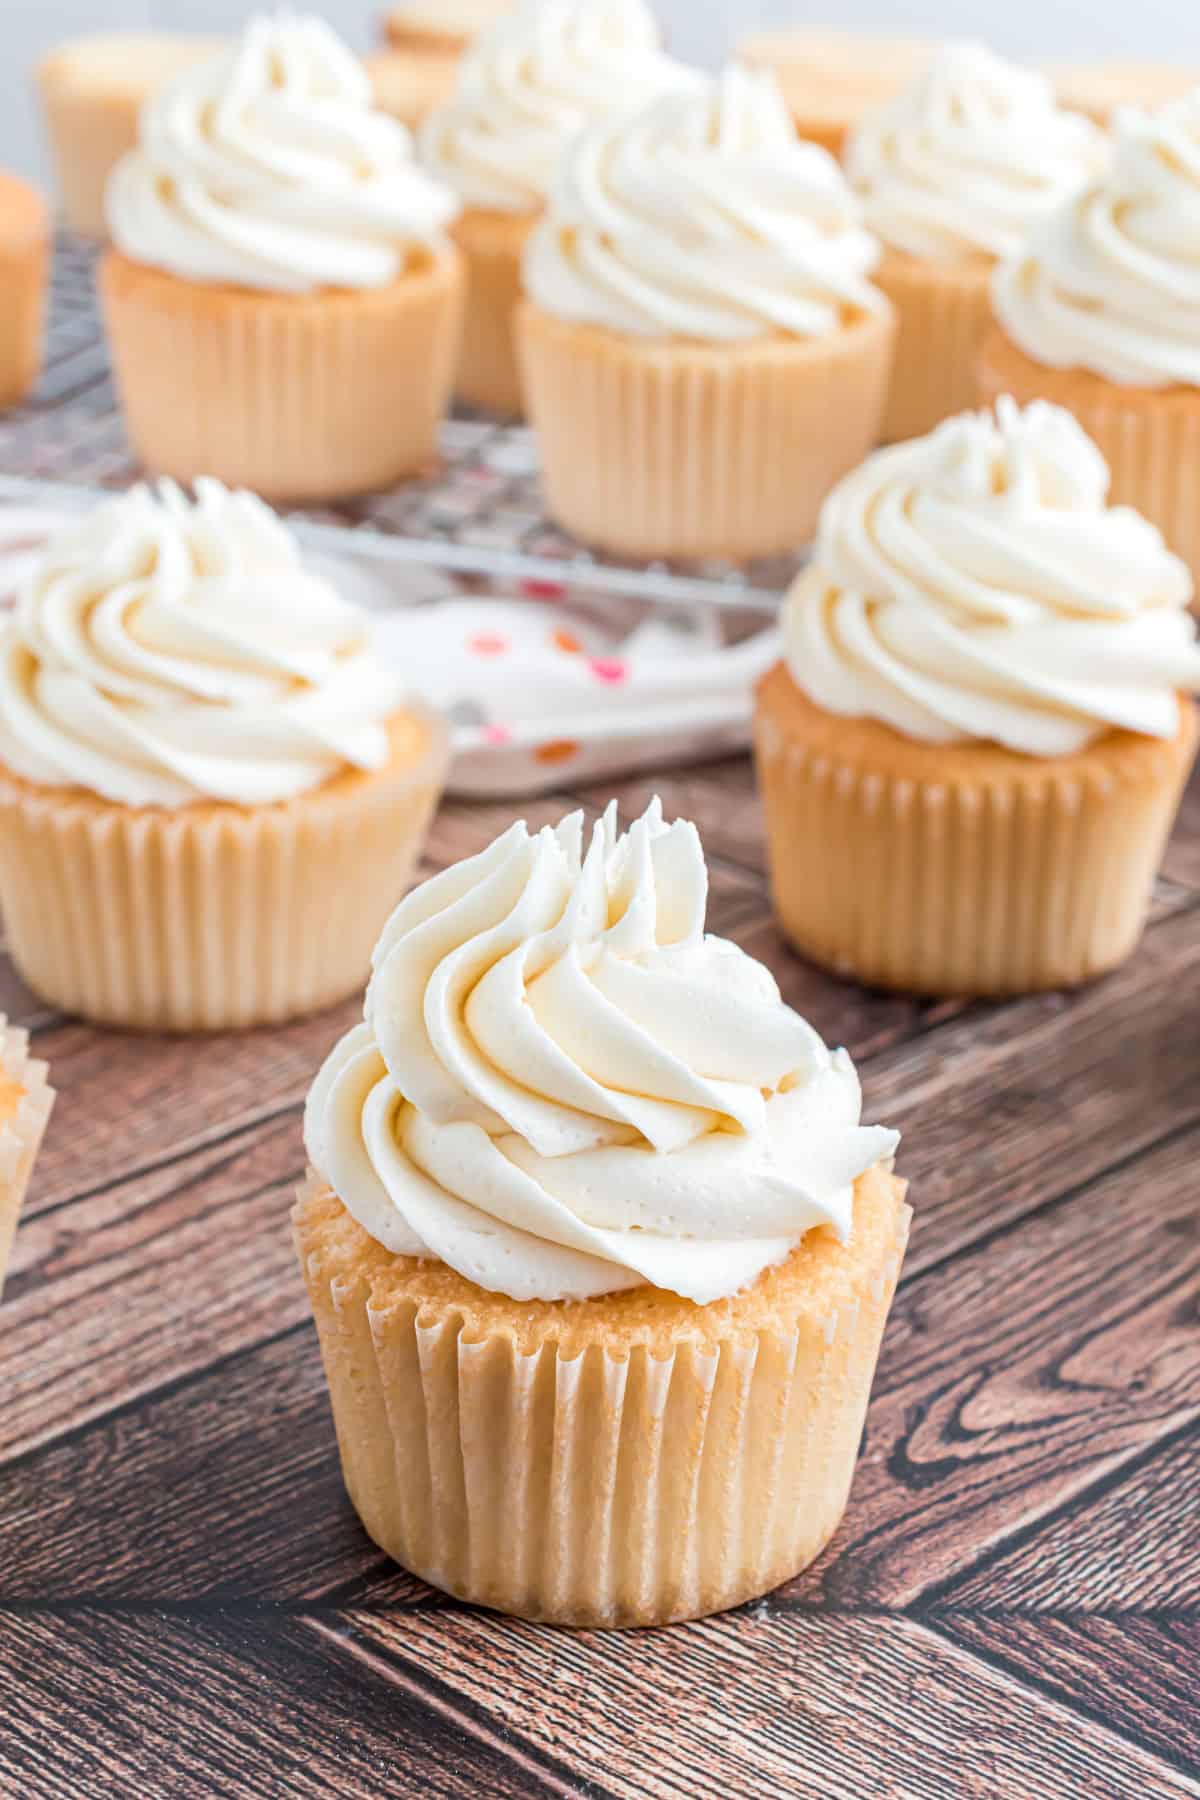 Cupcakes bianchi ricoperti di glassa alla vaniglia.